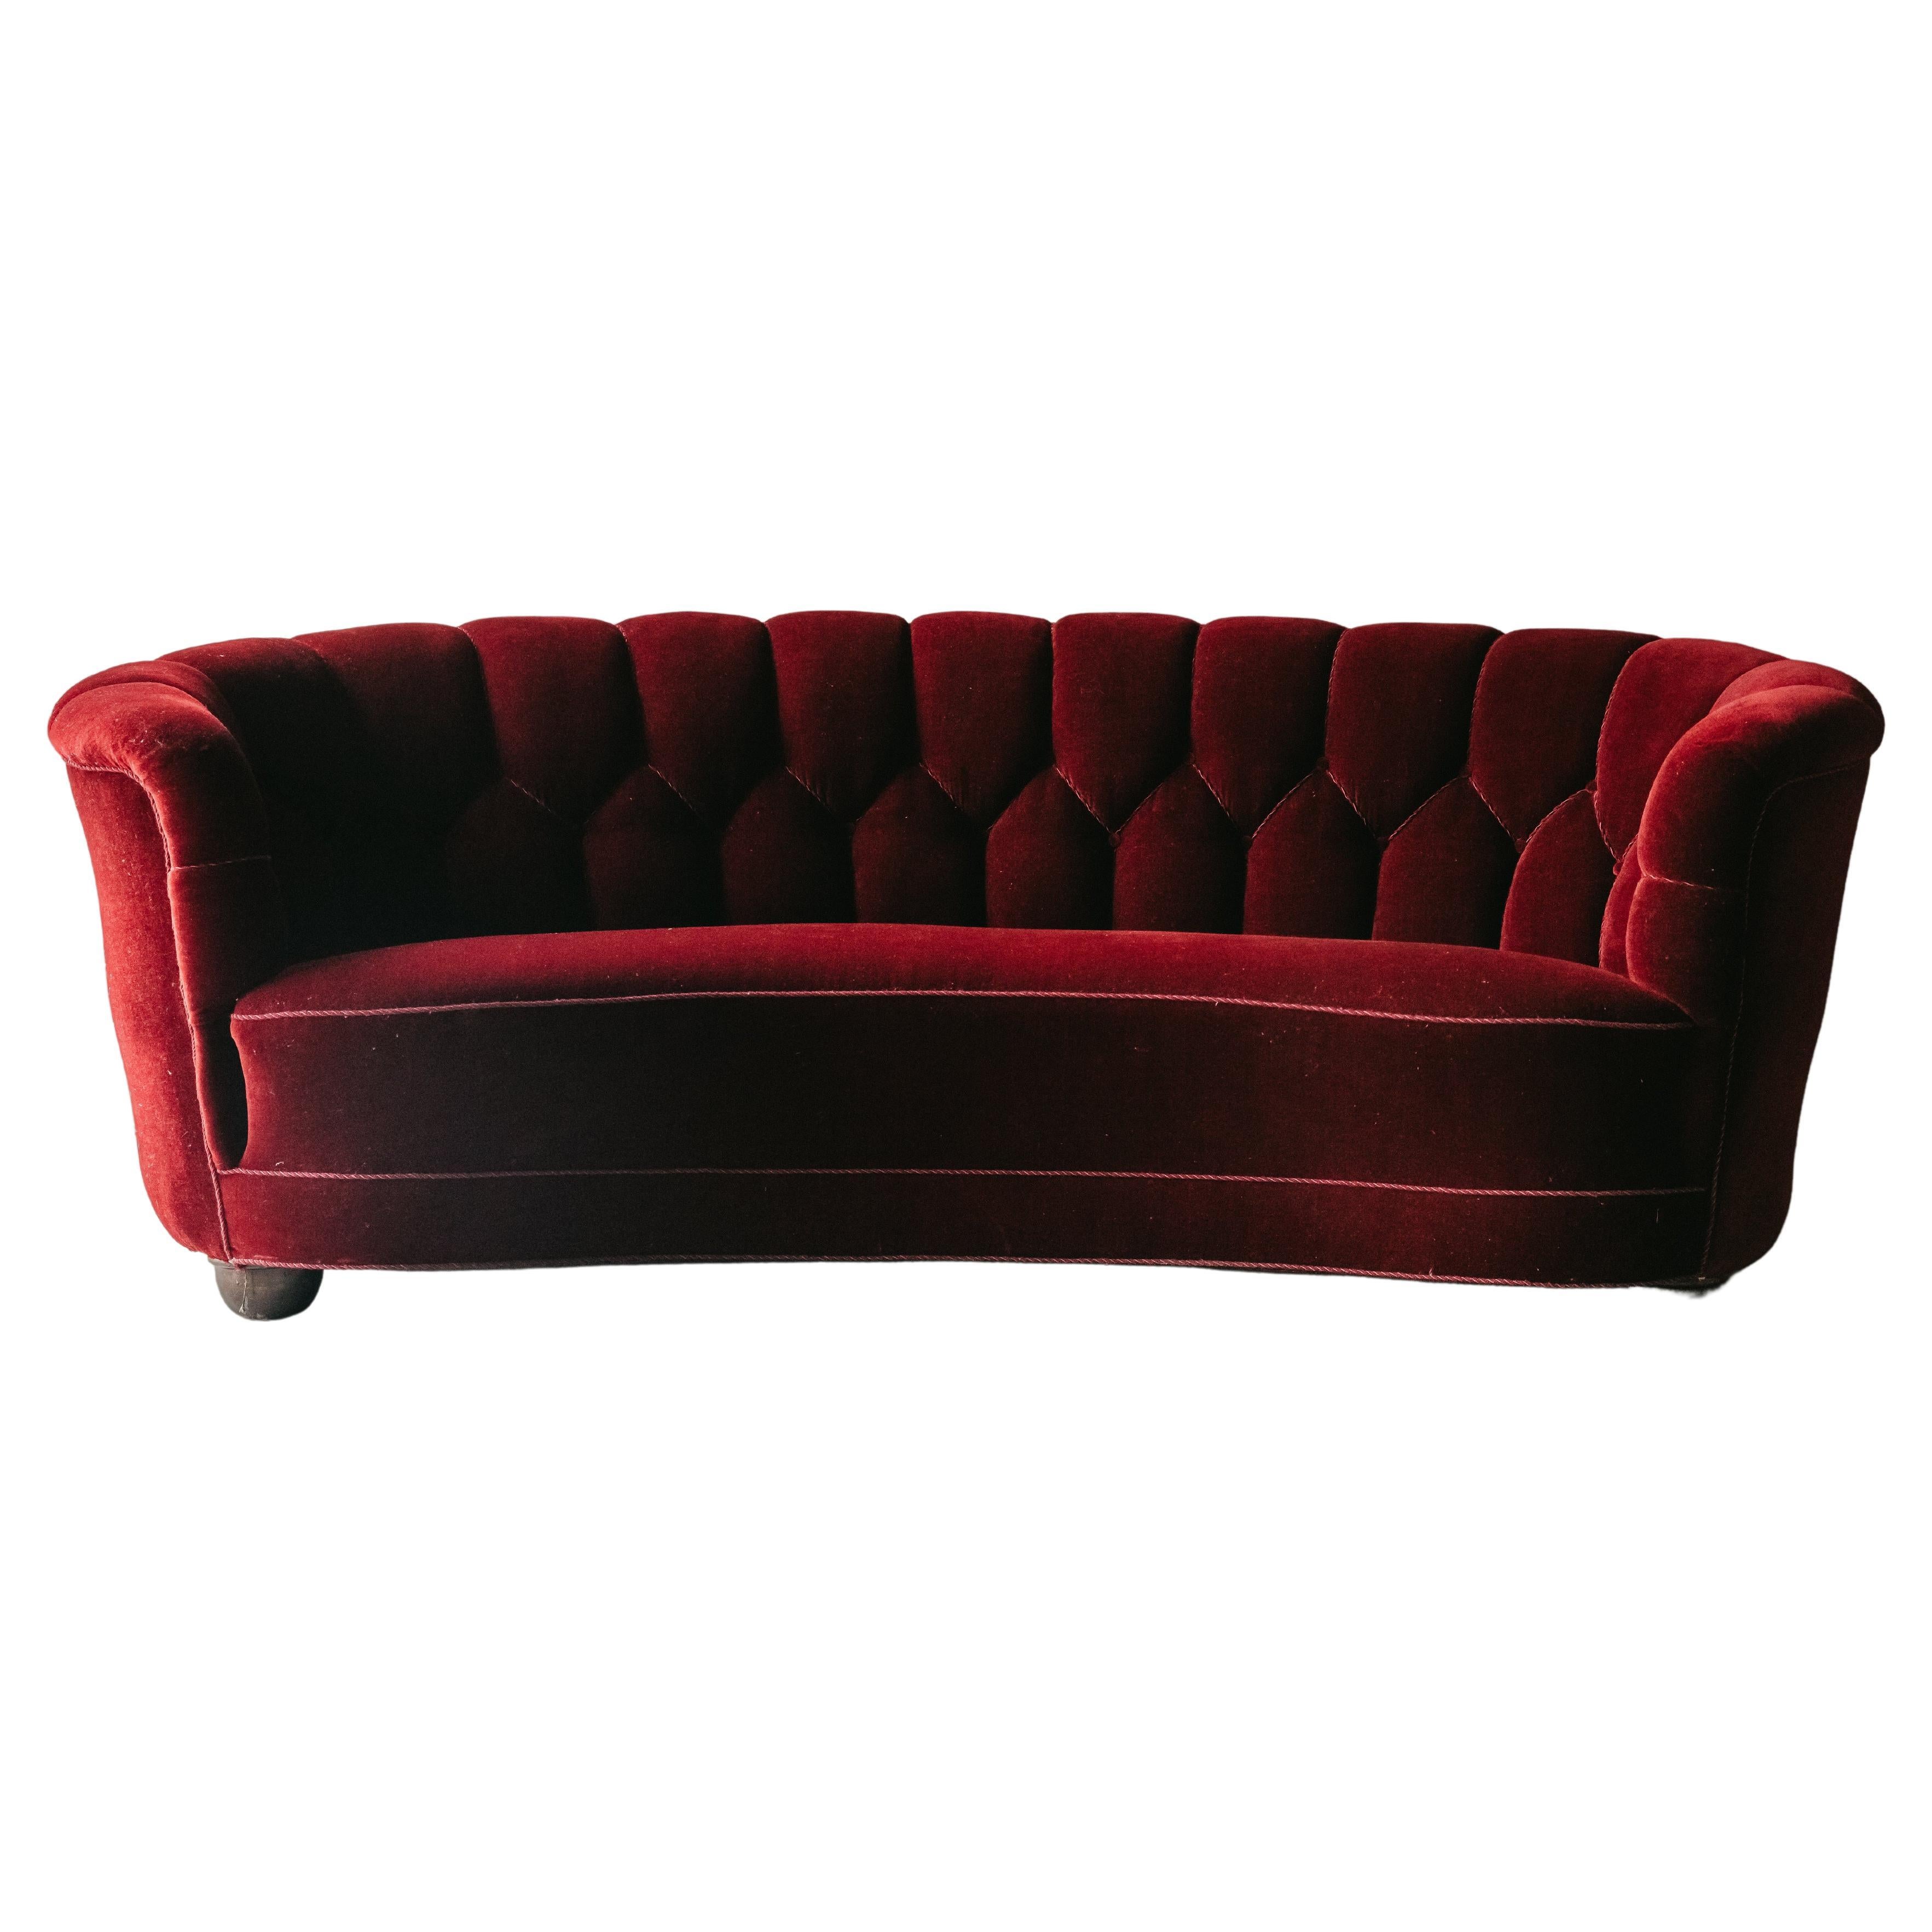 Vintage Red Velvet Sofa From Denmark, Circa 1950 For Sale